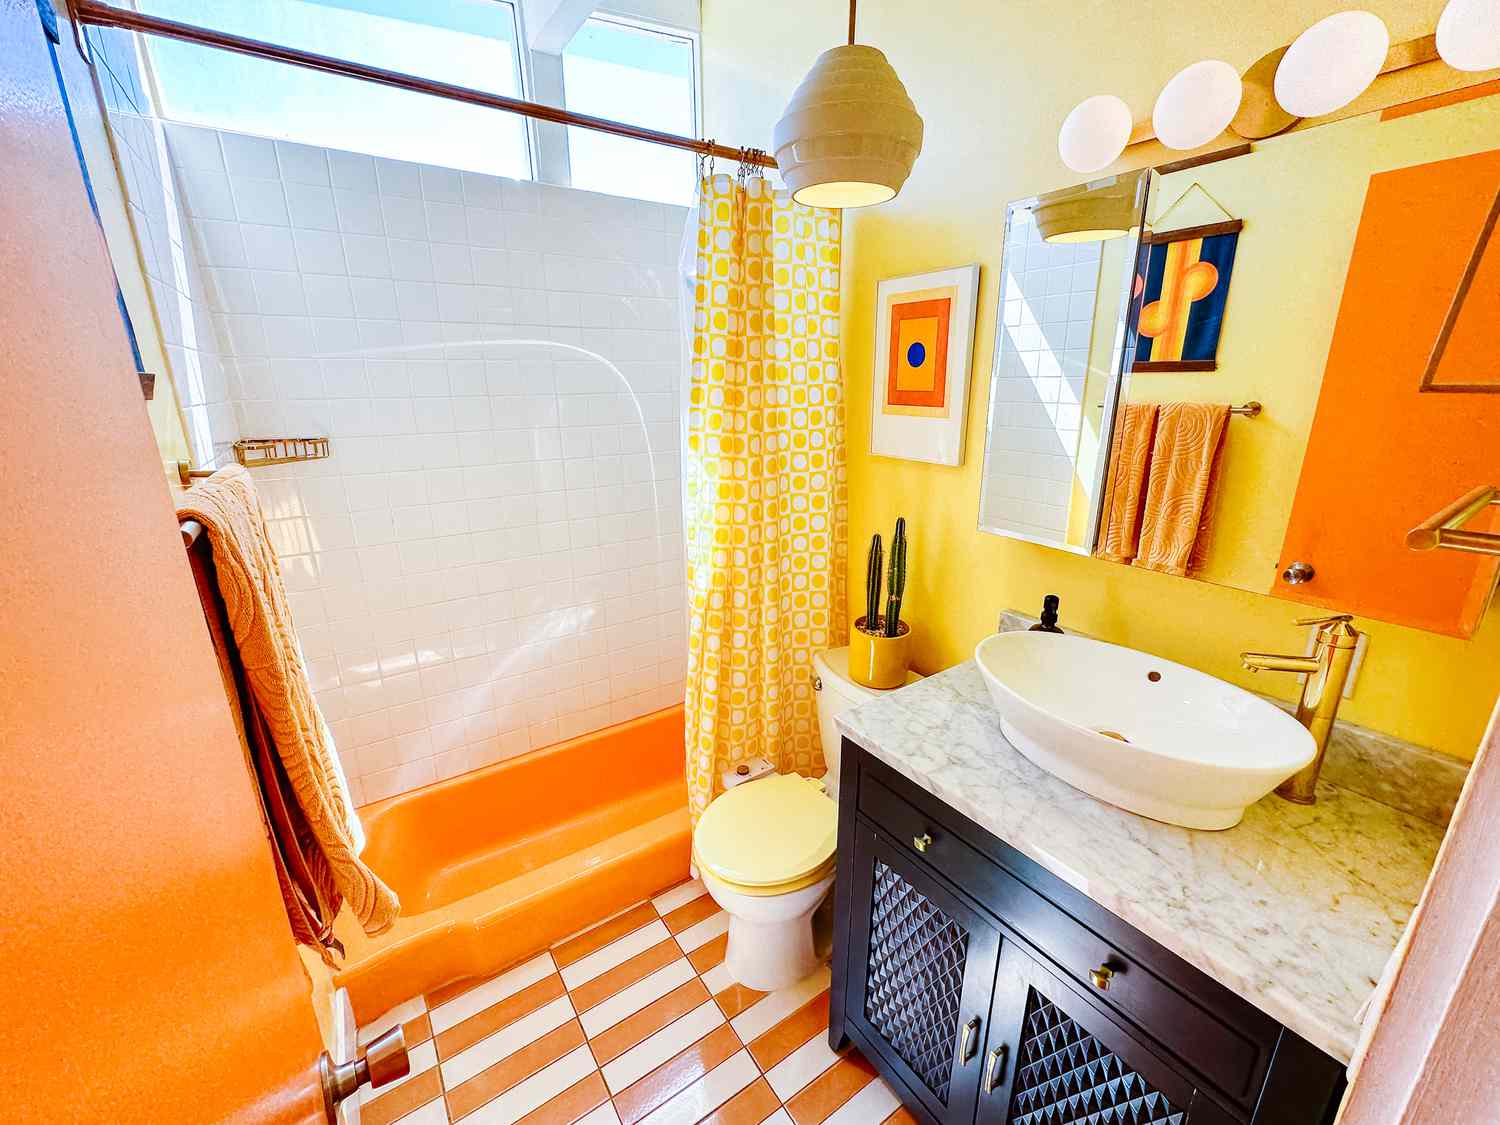 Salle de bain jaune et orange vif